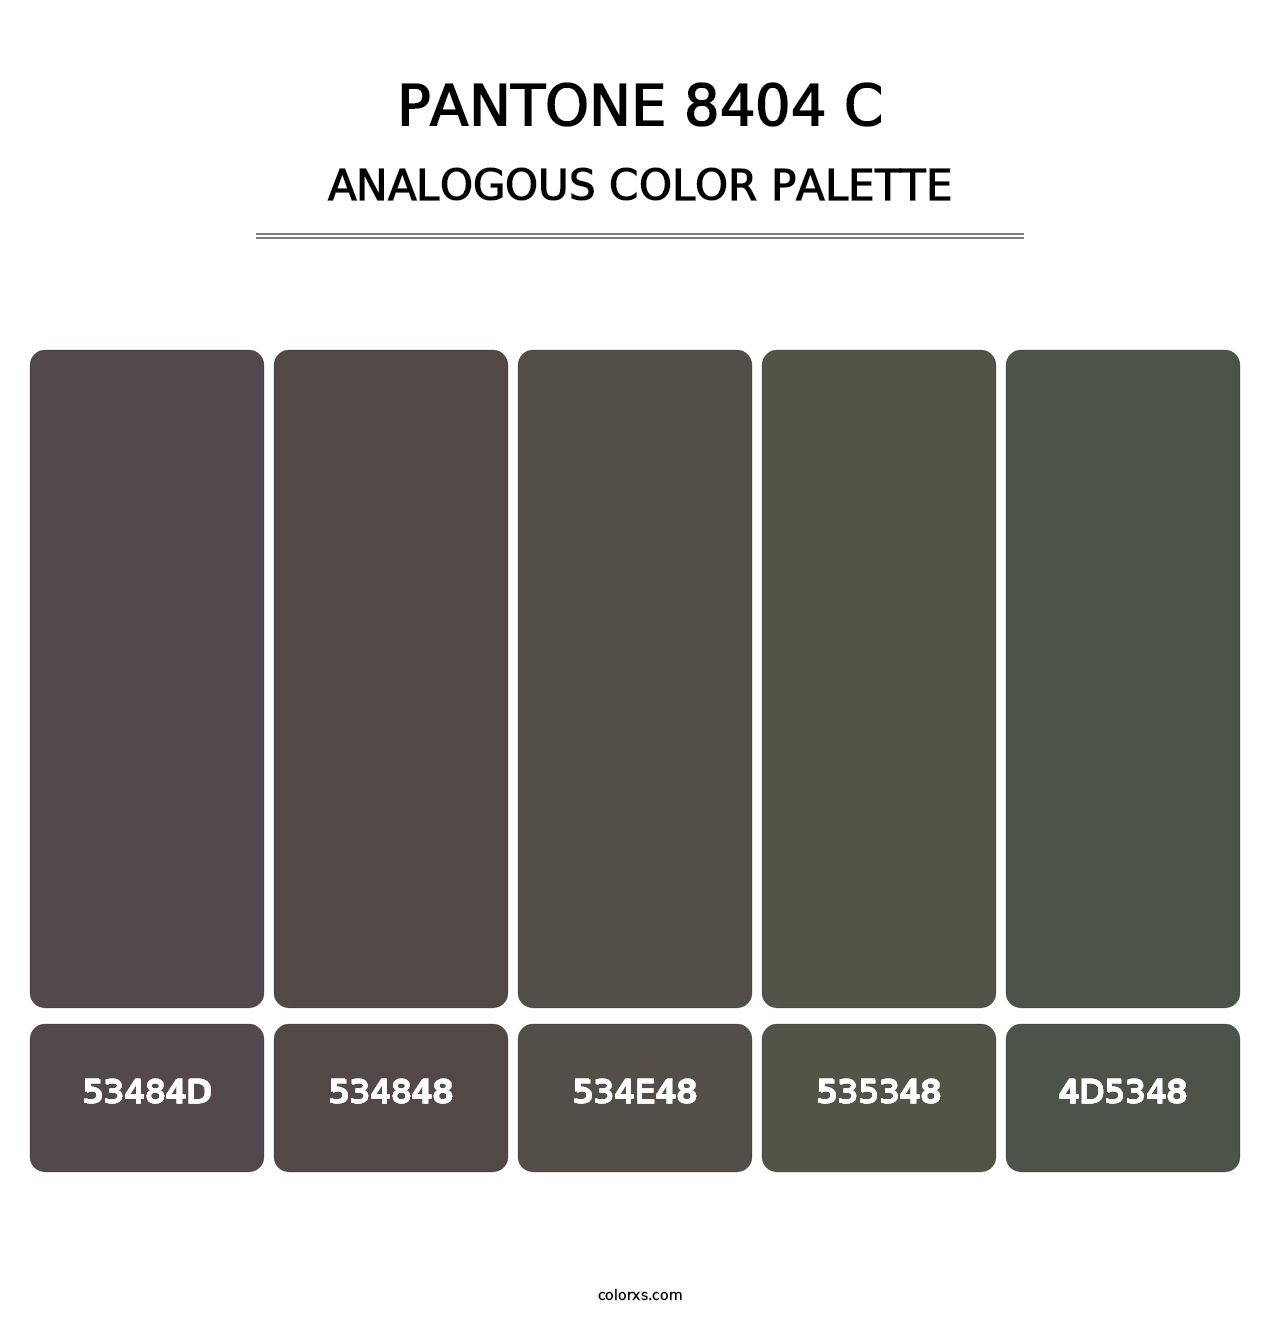 PANTONE 8404 C - Analogous Color Palette